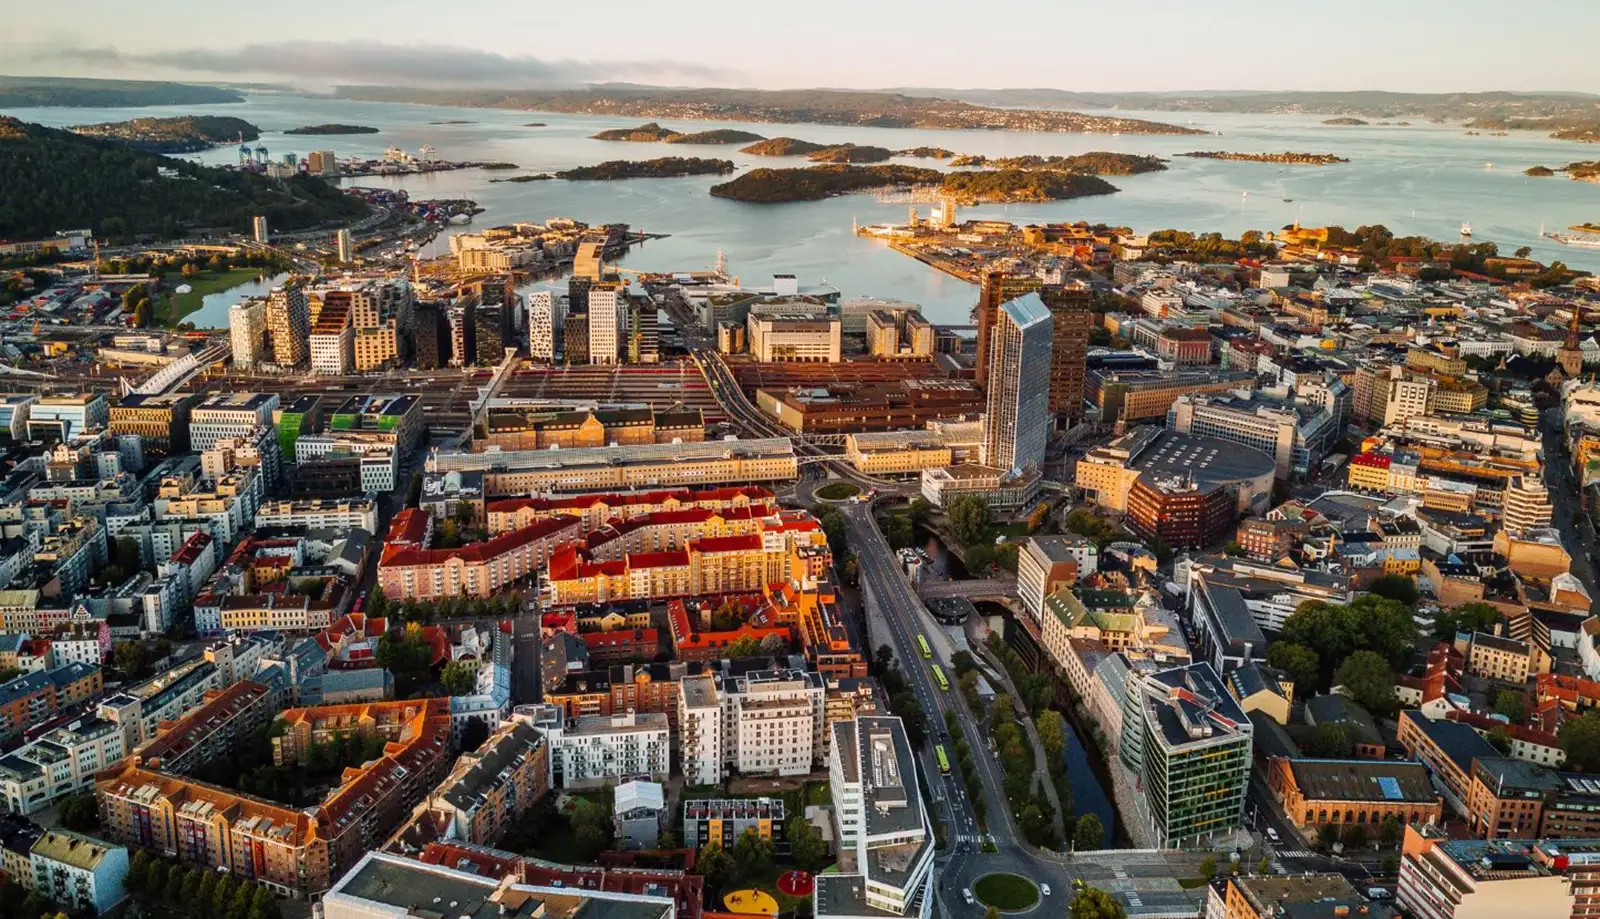 Thủ đô Oslo sở hữu không khí trong lành, nhiều cây xanh, sông hồ thân thiện